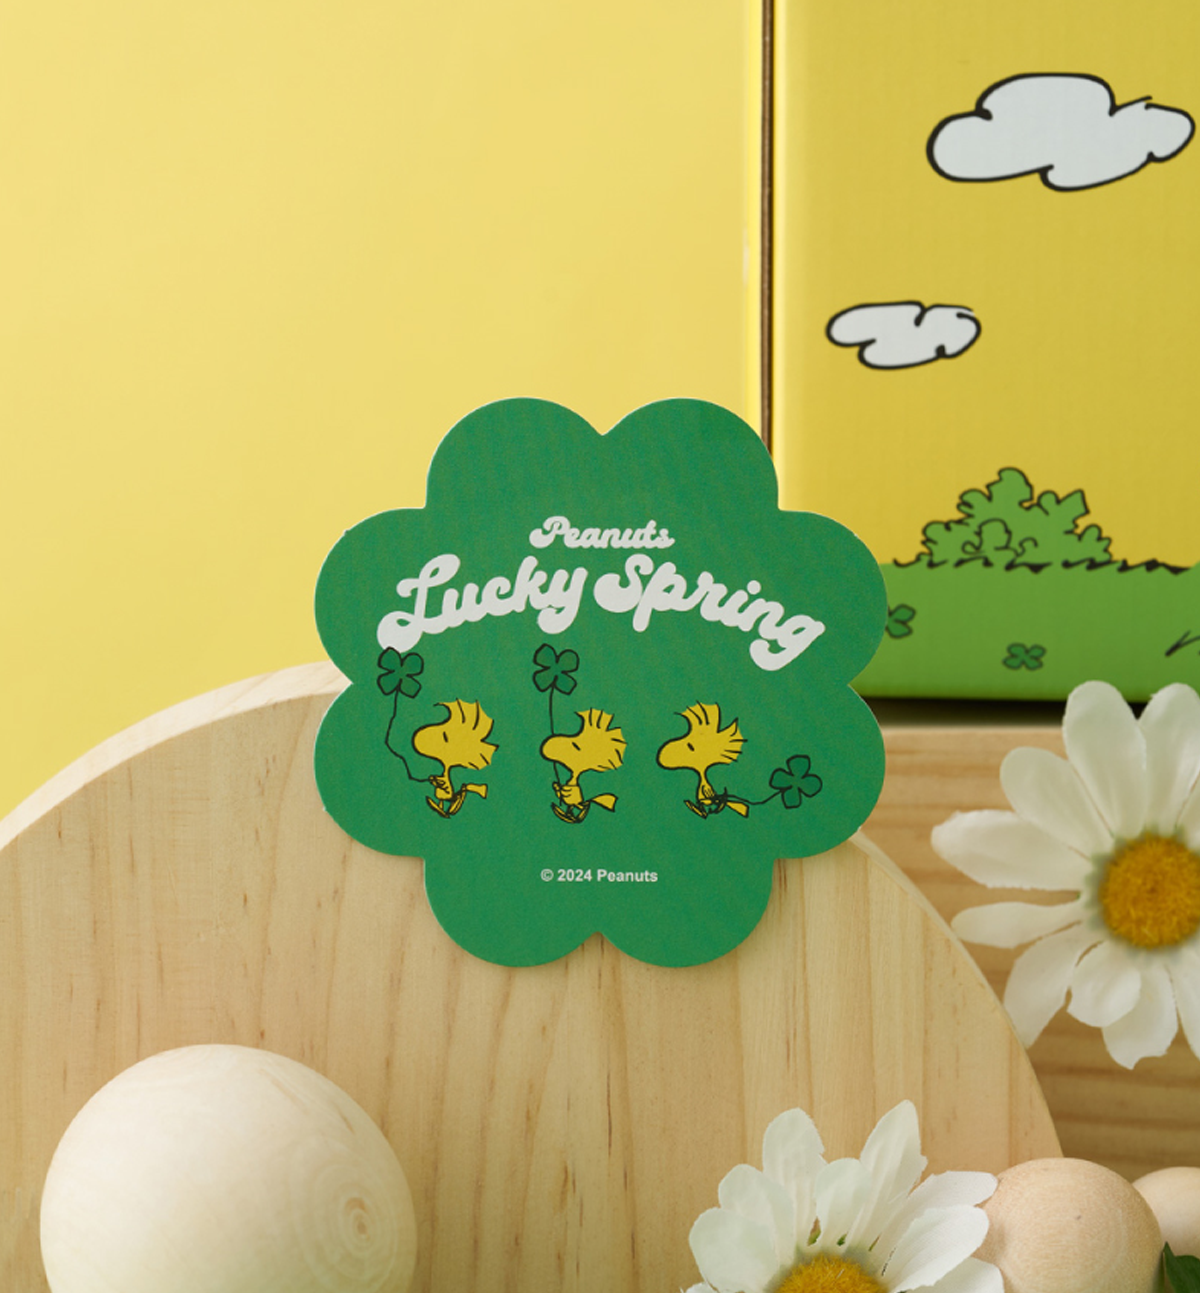 Snoopy Lucky Spring Mug Set [2 Mugs]